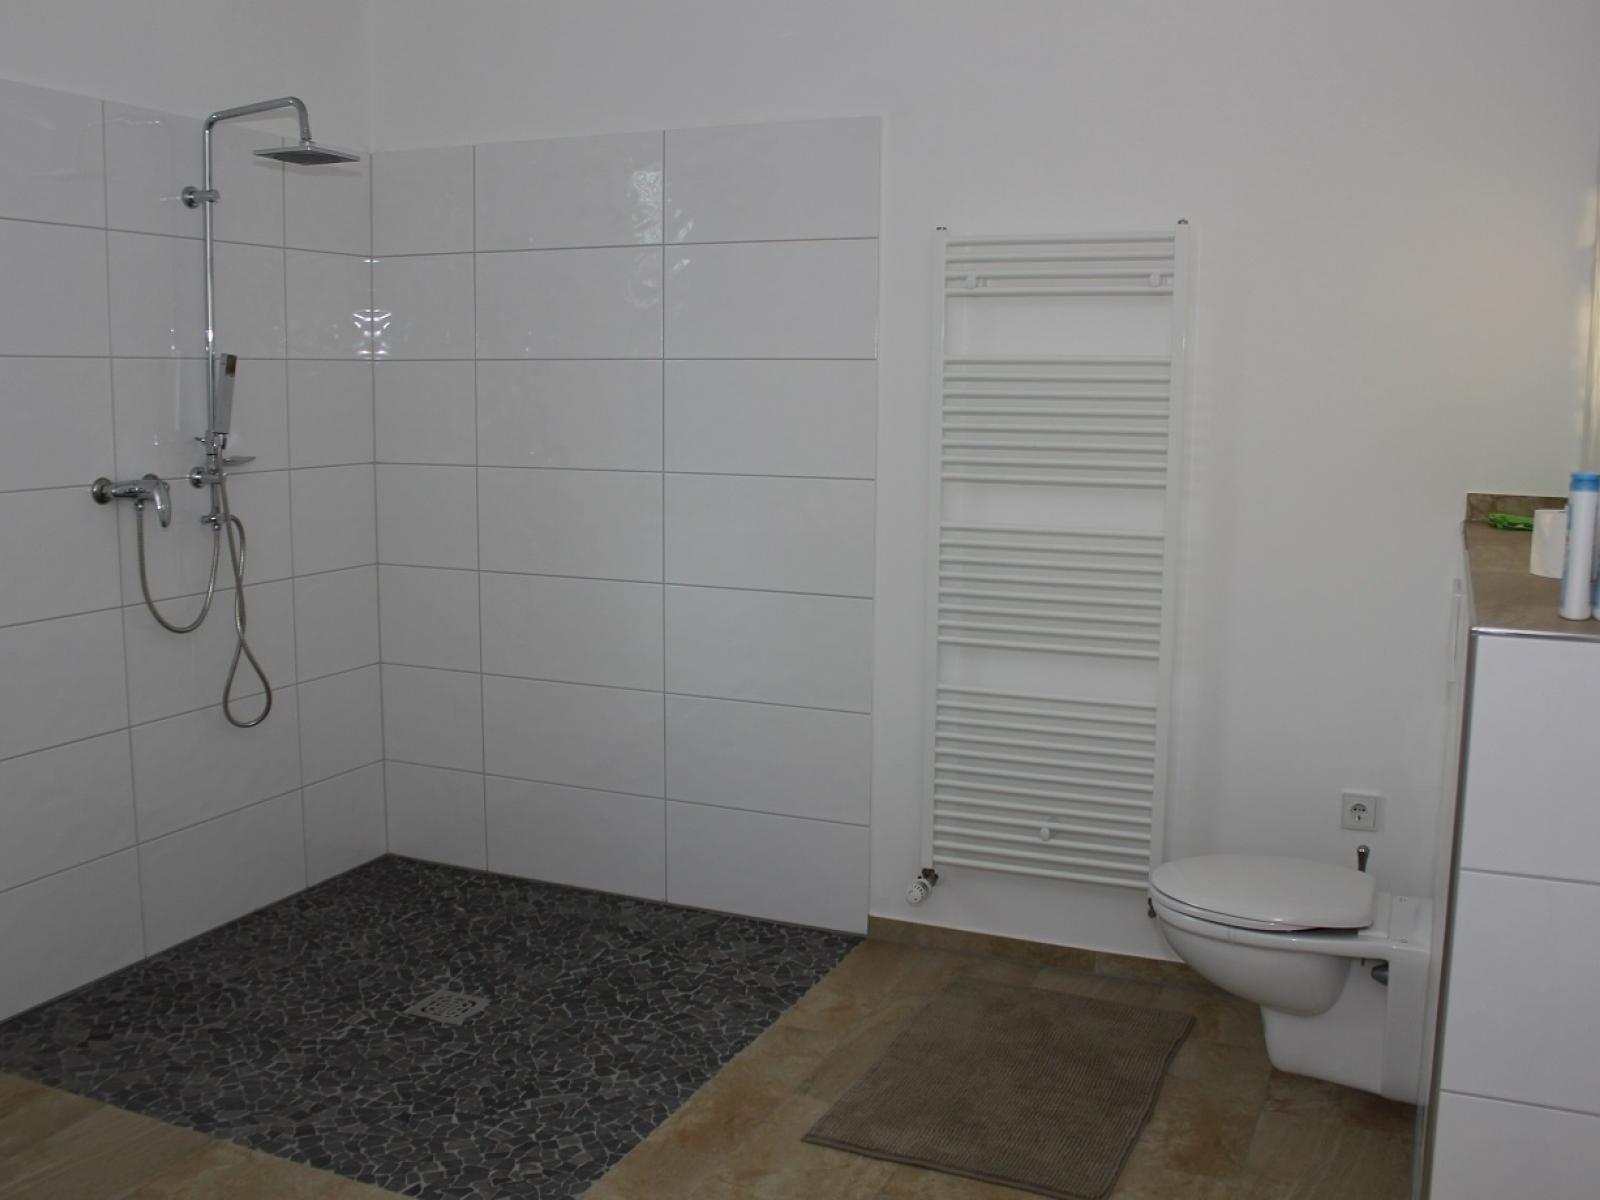 Badezimmer in der Pflegeeinrichtung Köln-Hahnewald